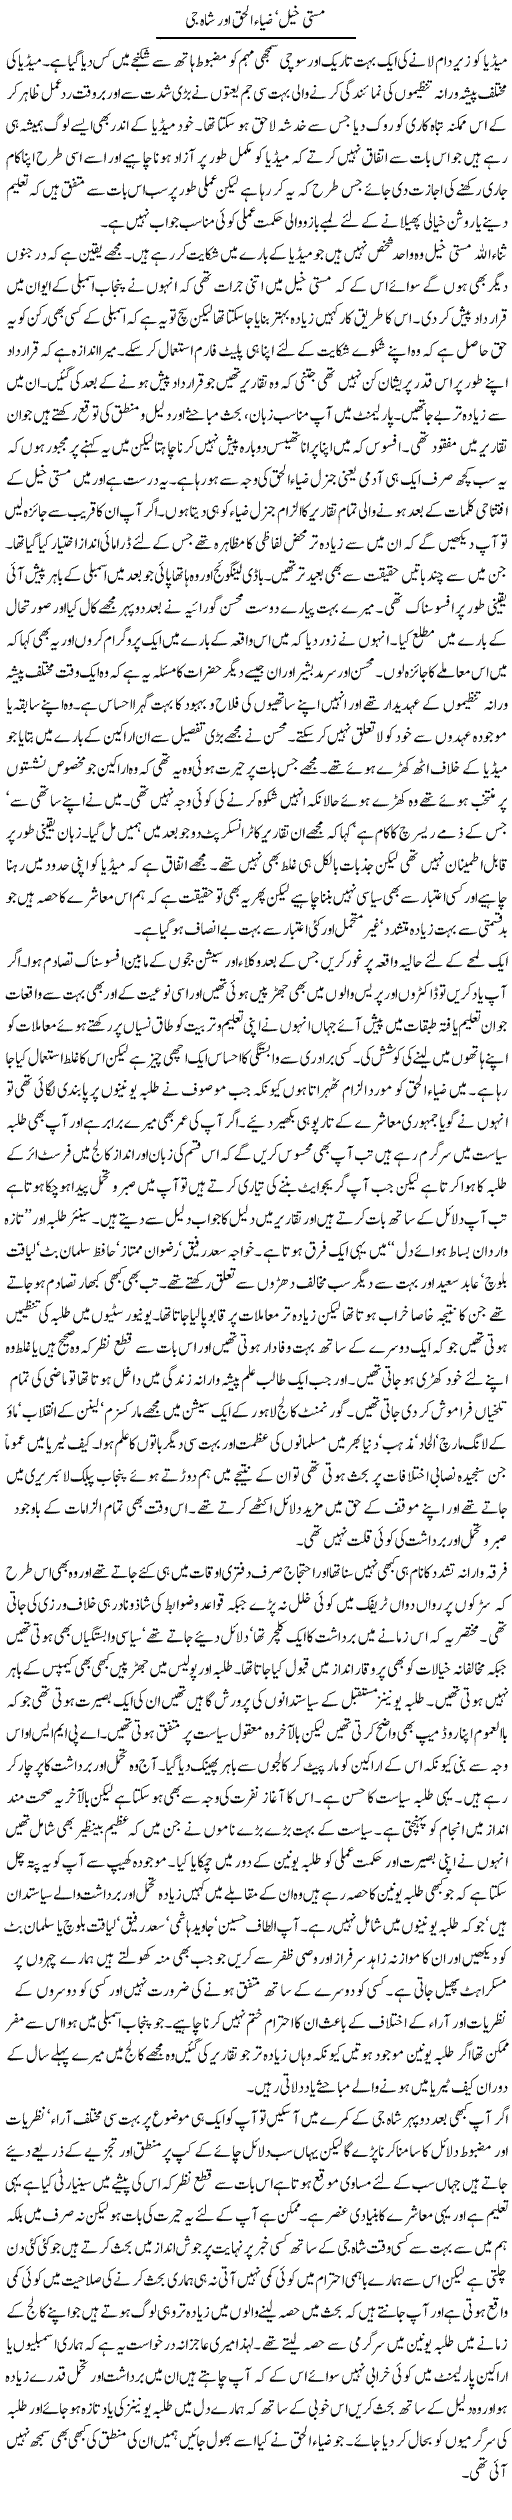 Masti Khel Aur Zia ul Haq Express Column Mubashir Luqman 16 July 2010